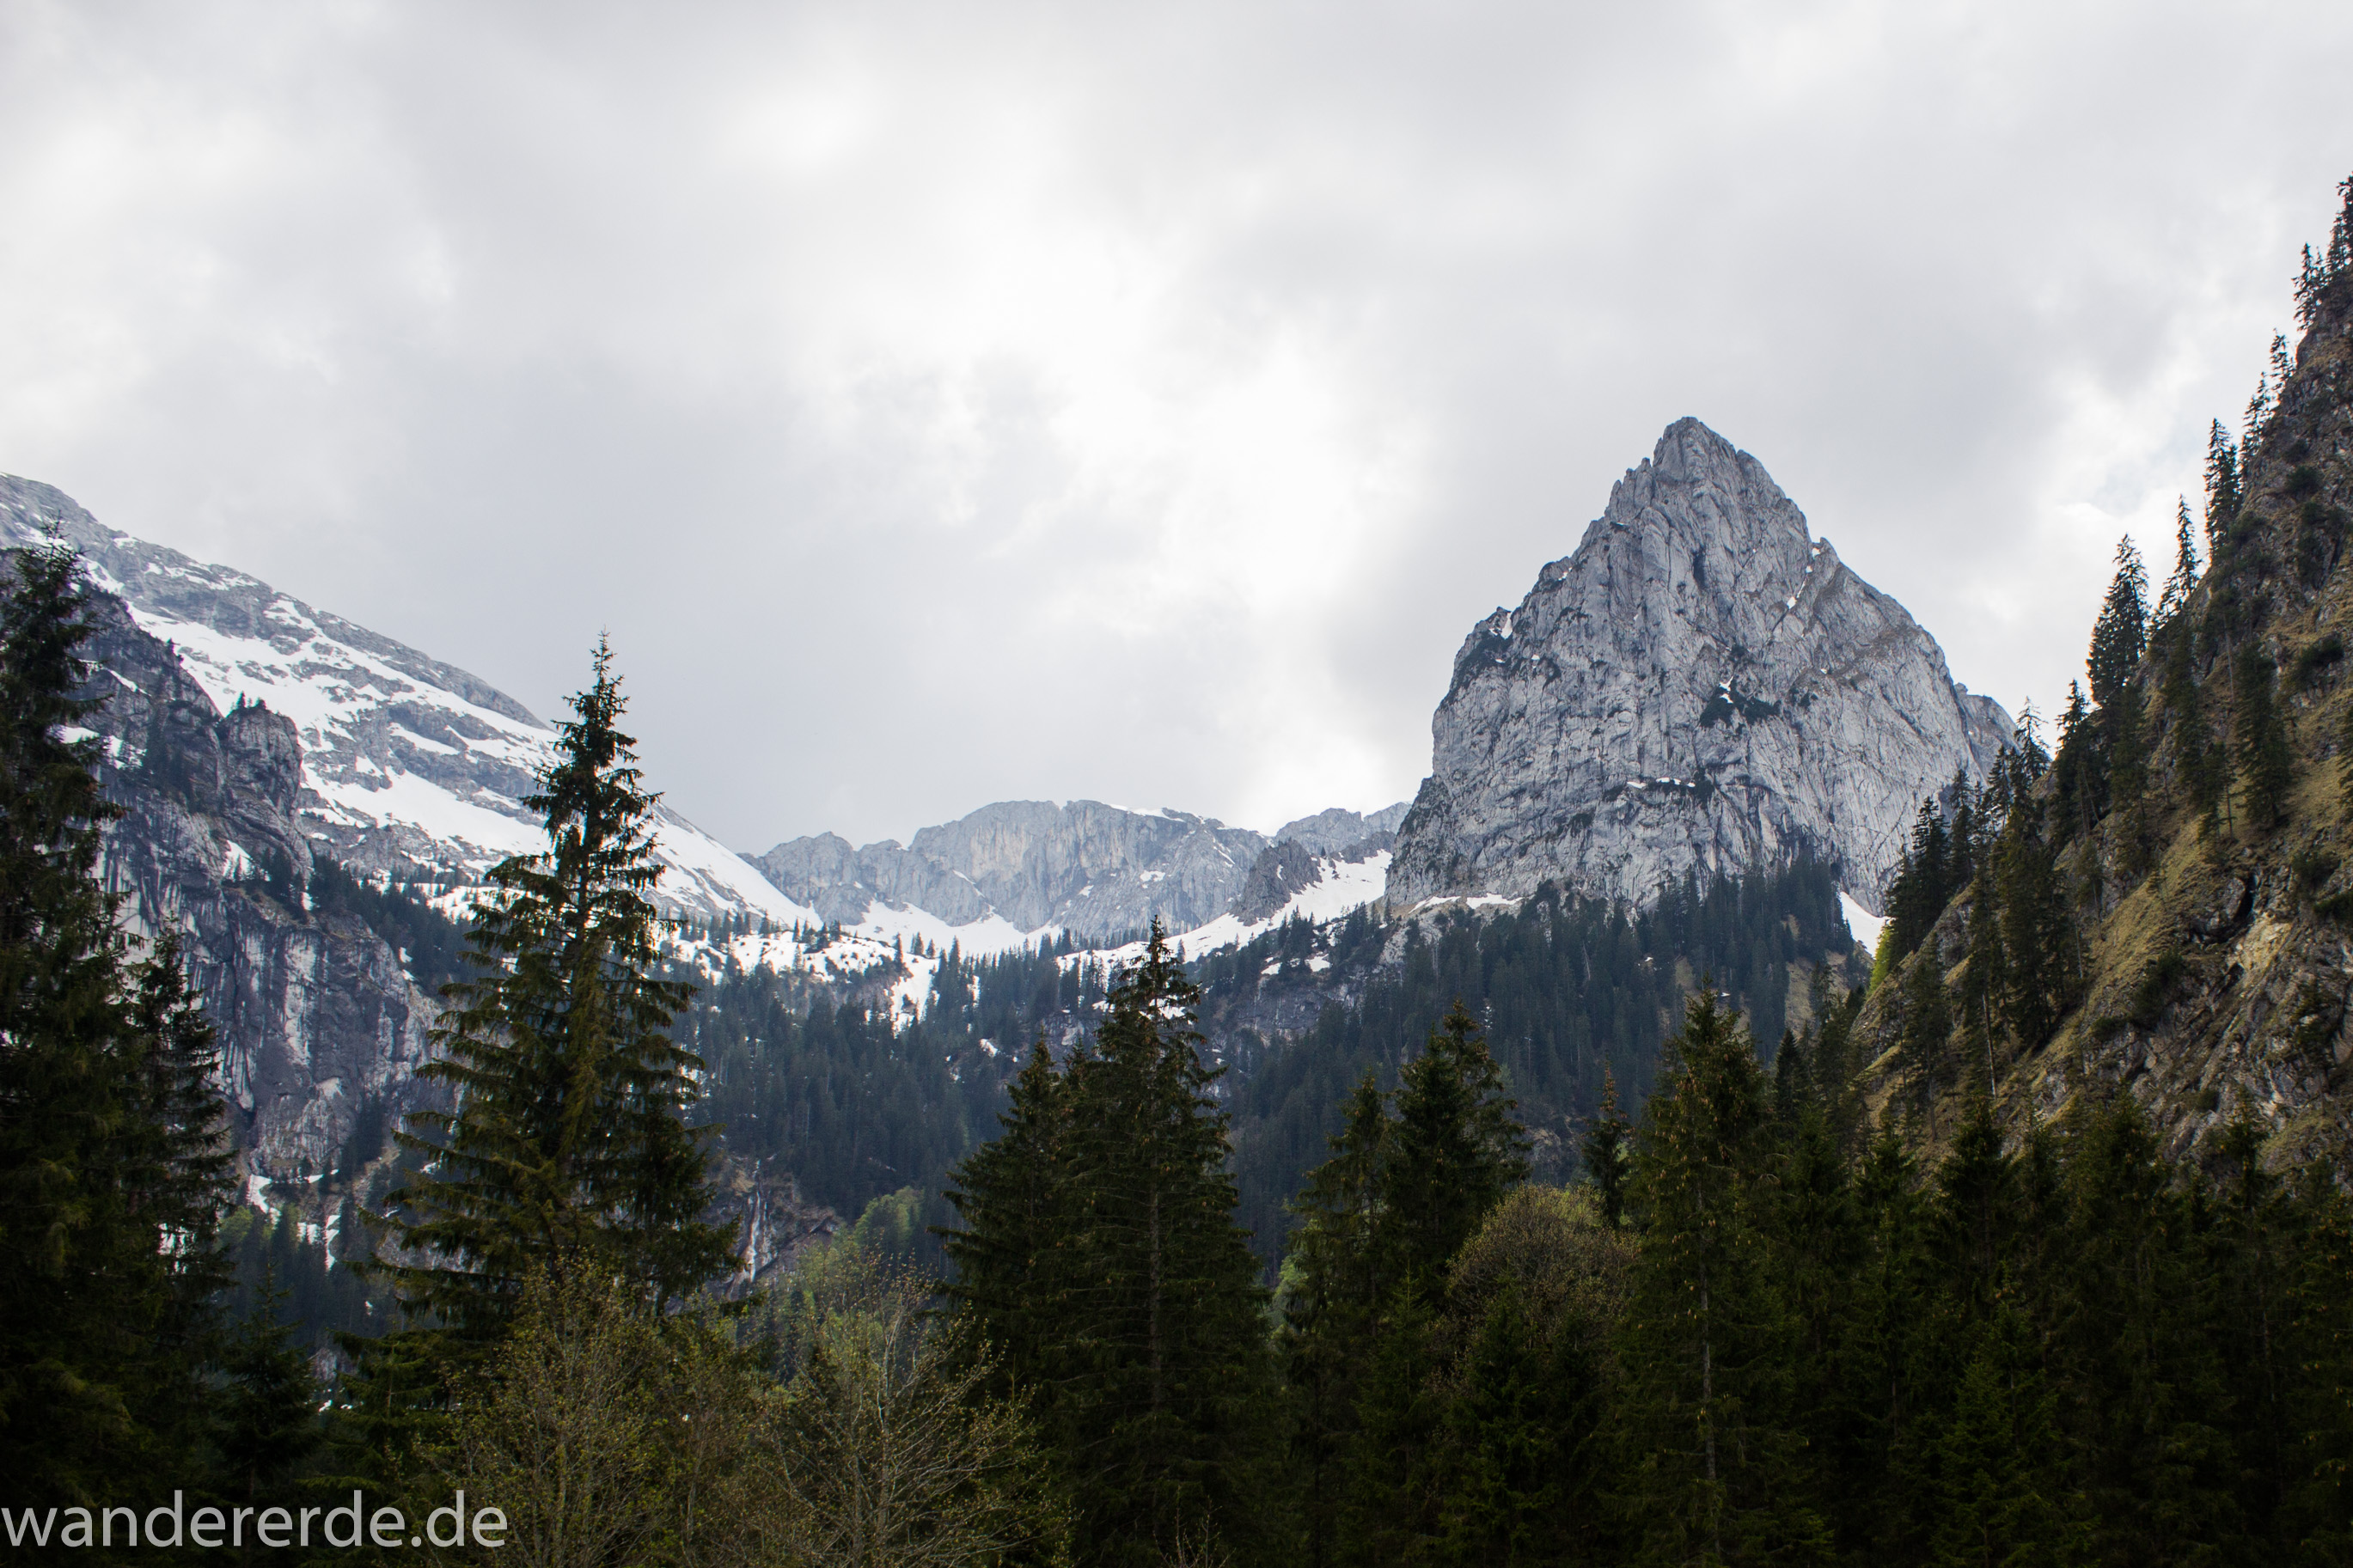 Wanderung zur Kenzenhütte in den Ammergauer Alpen, Aussicht auf die Berge, teils schneebedeckte Gipfel in Wolken gehüllt, Frühjahr in den bayerischen Alpen, dichter grüner Wald und saftige Wiesen, Wanderweg oftmals am schönen, idyllischem Bach entlang